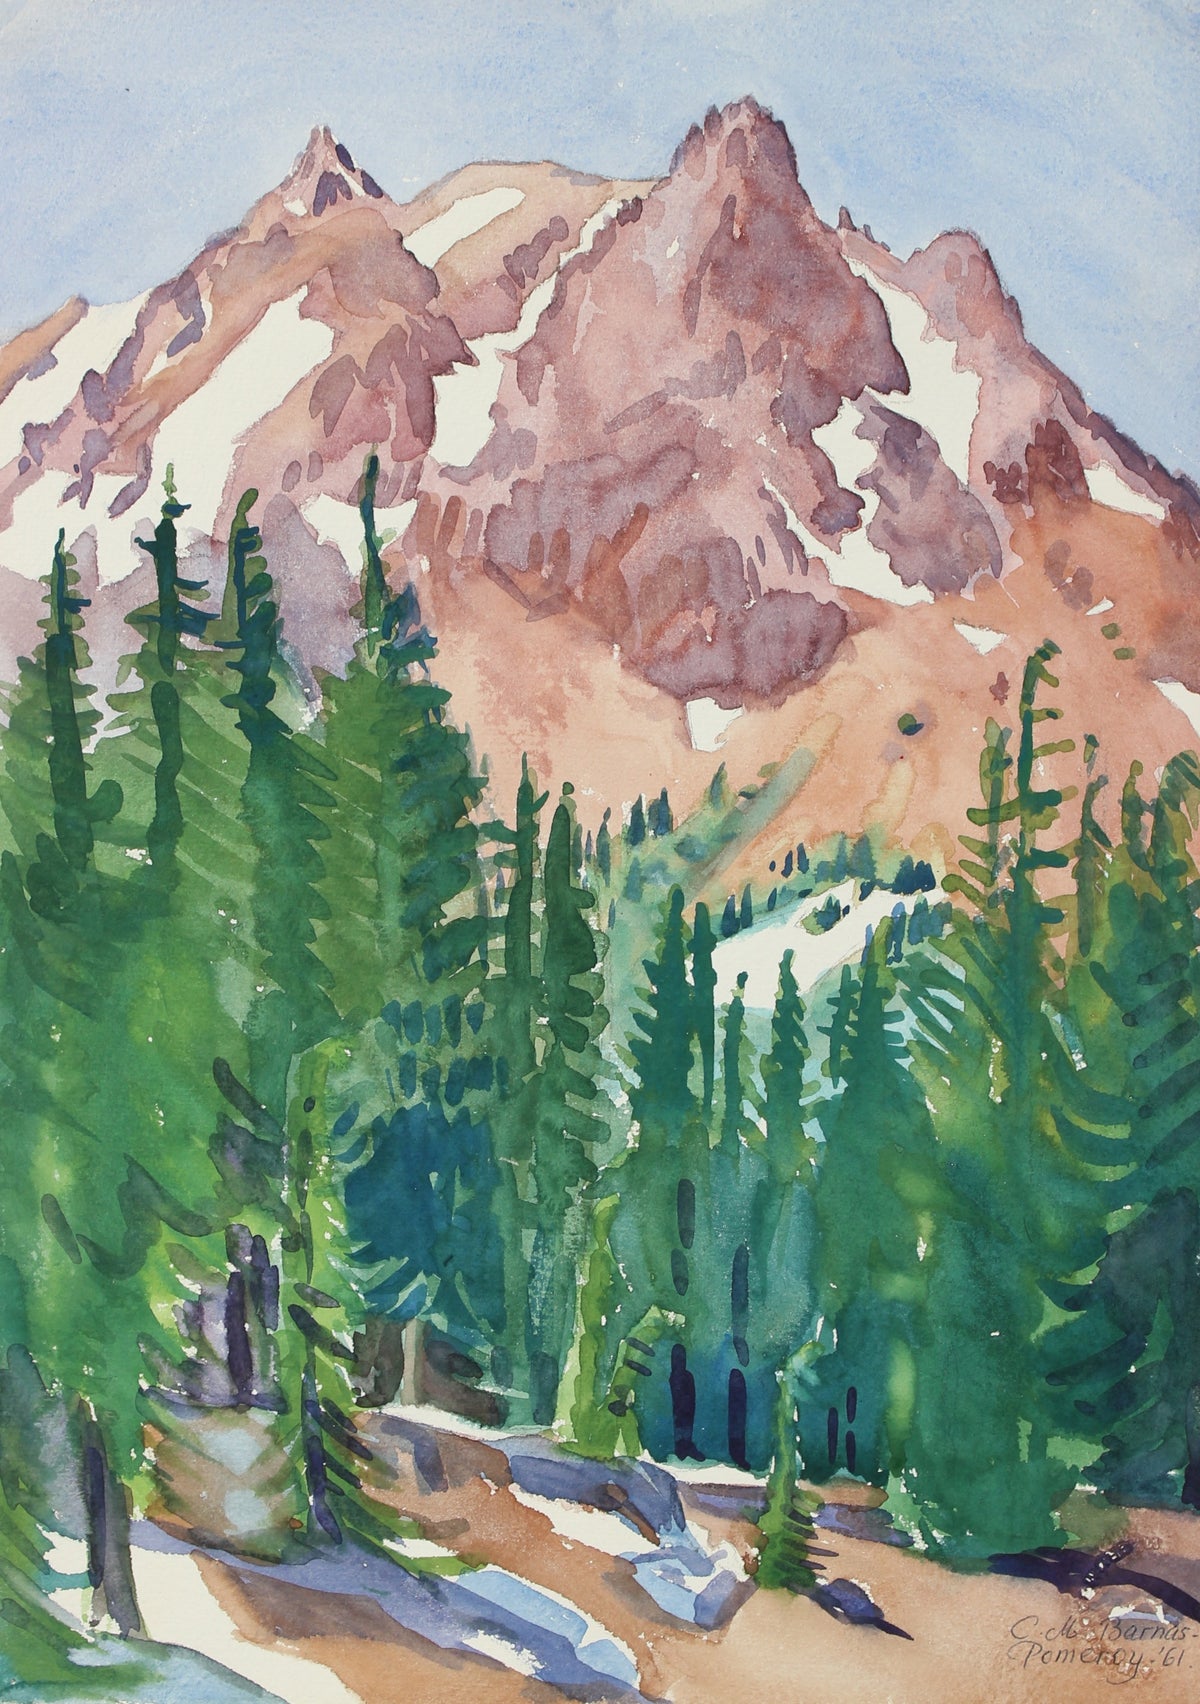 &lt;i&gt;View of Mt. Lassen&lt;/i&gt; &lt;br&gt; 1961 Watercolor&lt;br&gt;&lt;br&gt;#98653